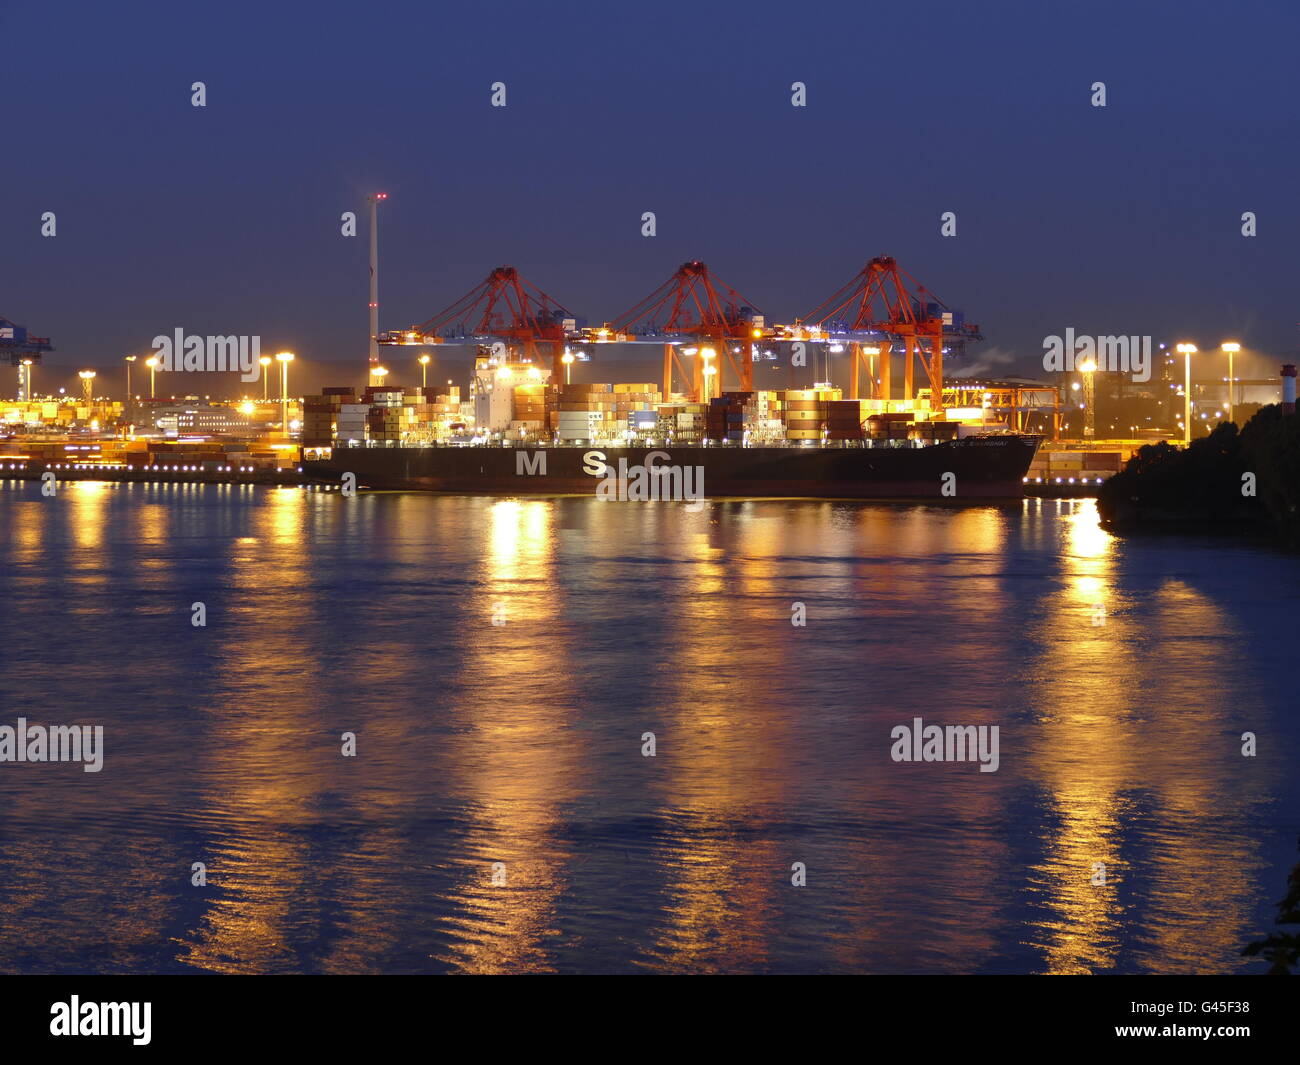 Europa Deutschland Hamburg Kran im Hamburger Hafen auf Elb Fluss Kanal Wasserstraße Stockfoto